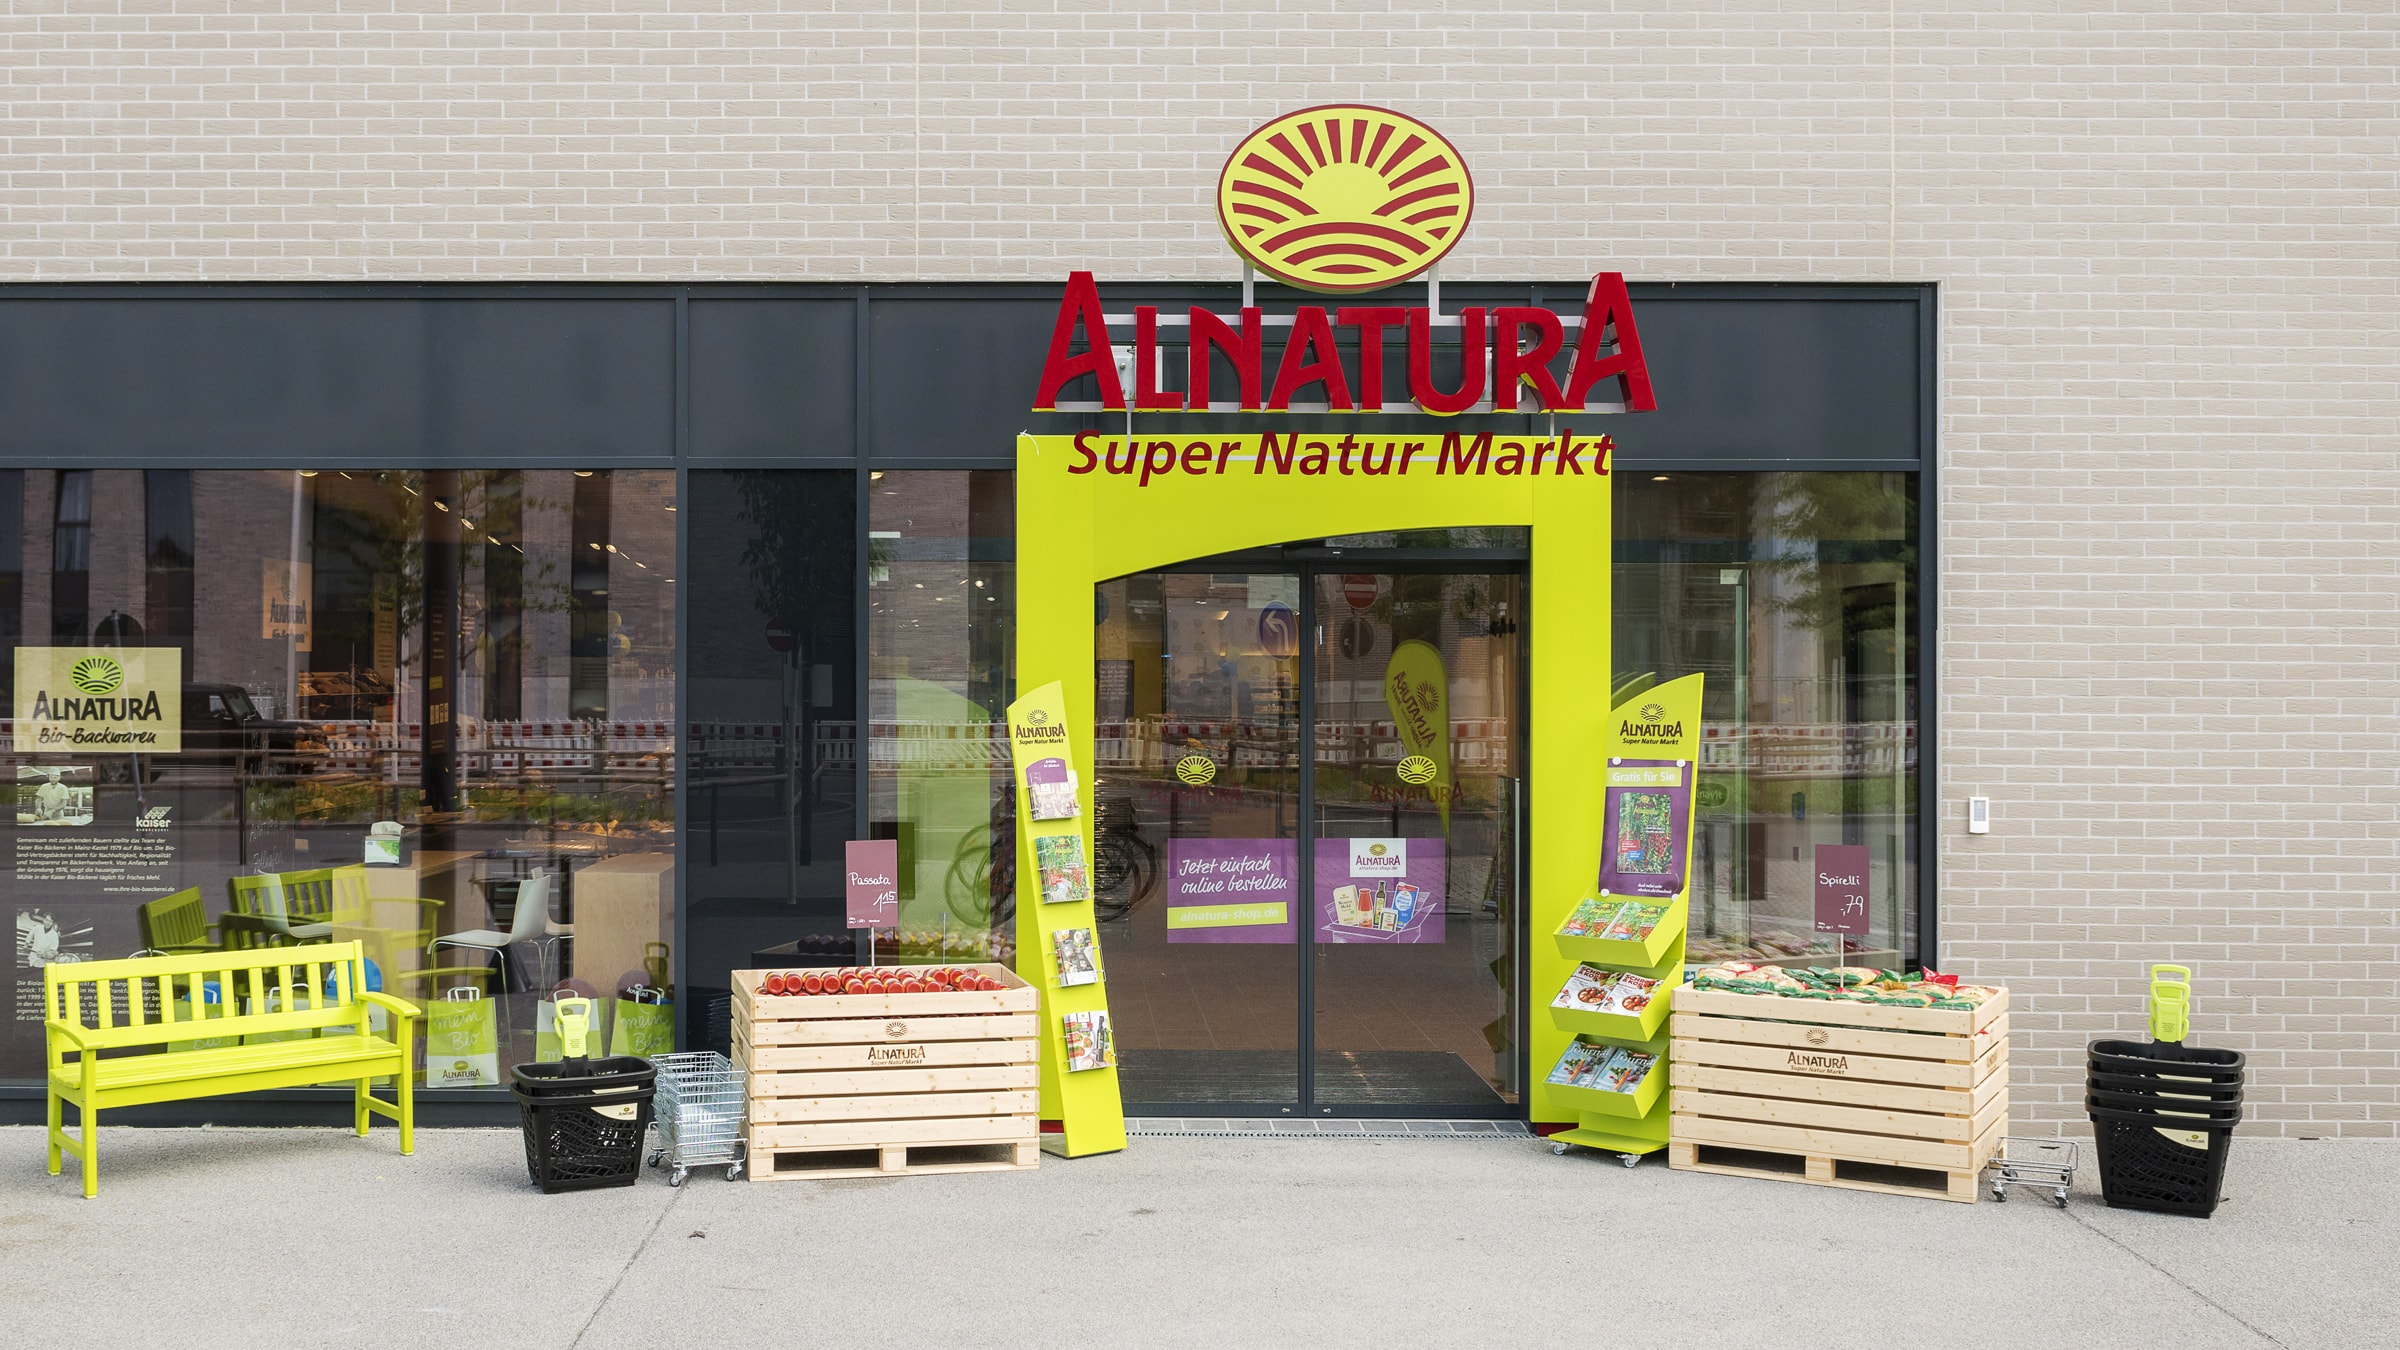 Ihr Alnatura Super Natur Markt in Mainz